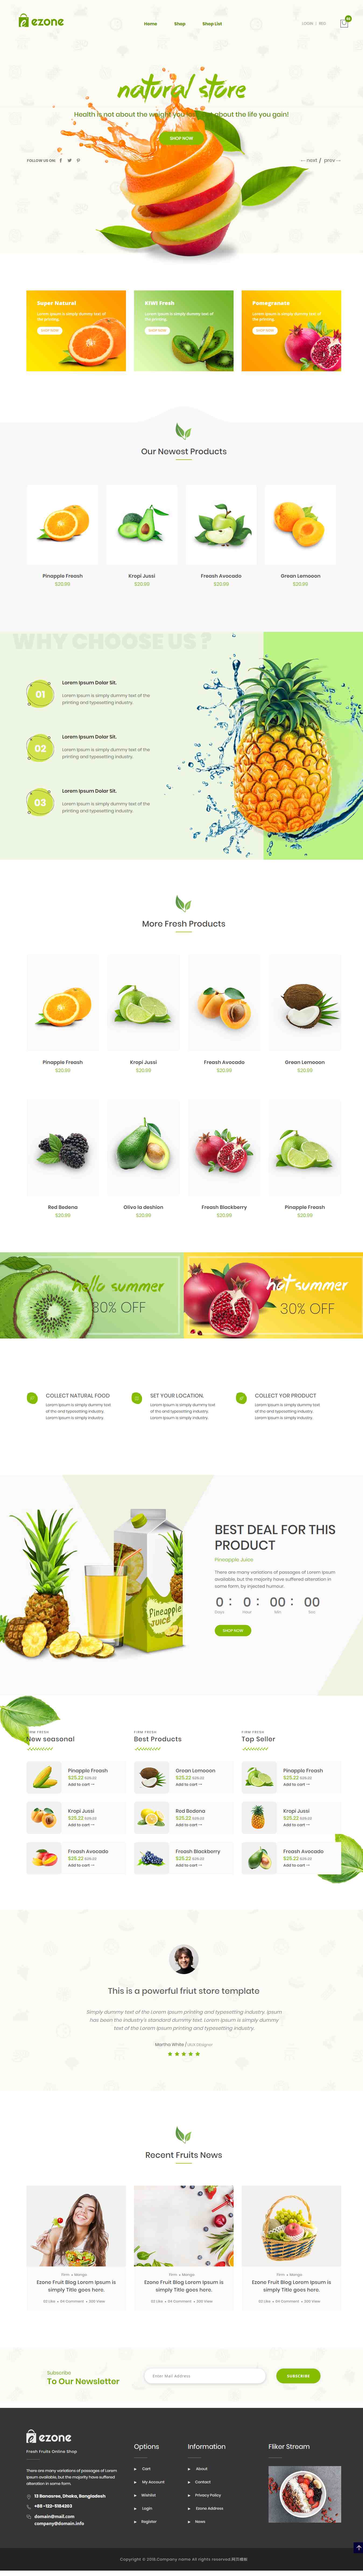 绿色简洁风格的水果在线商城整站网站源码下载